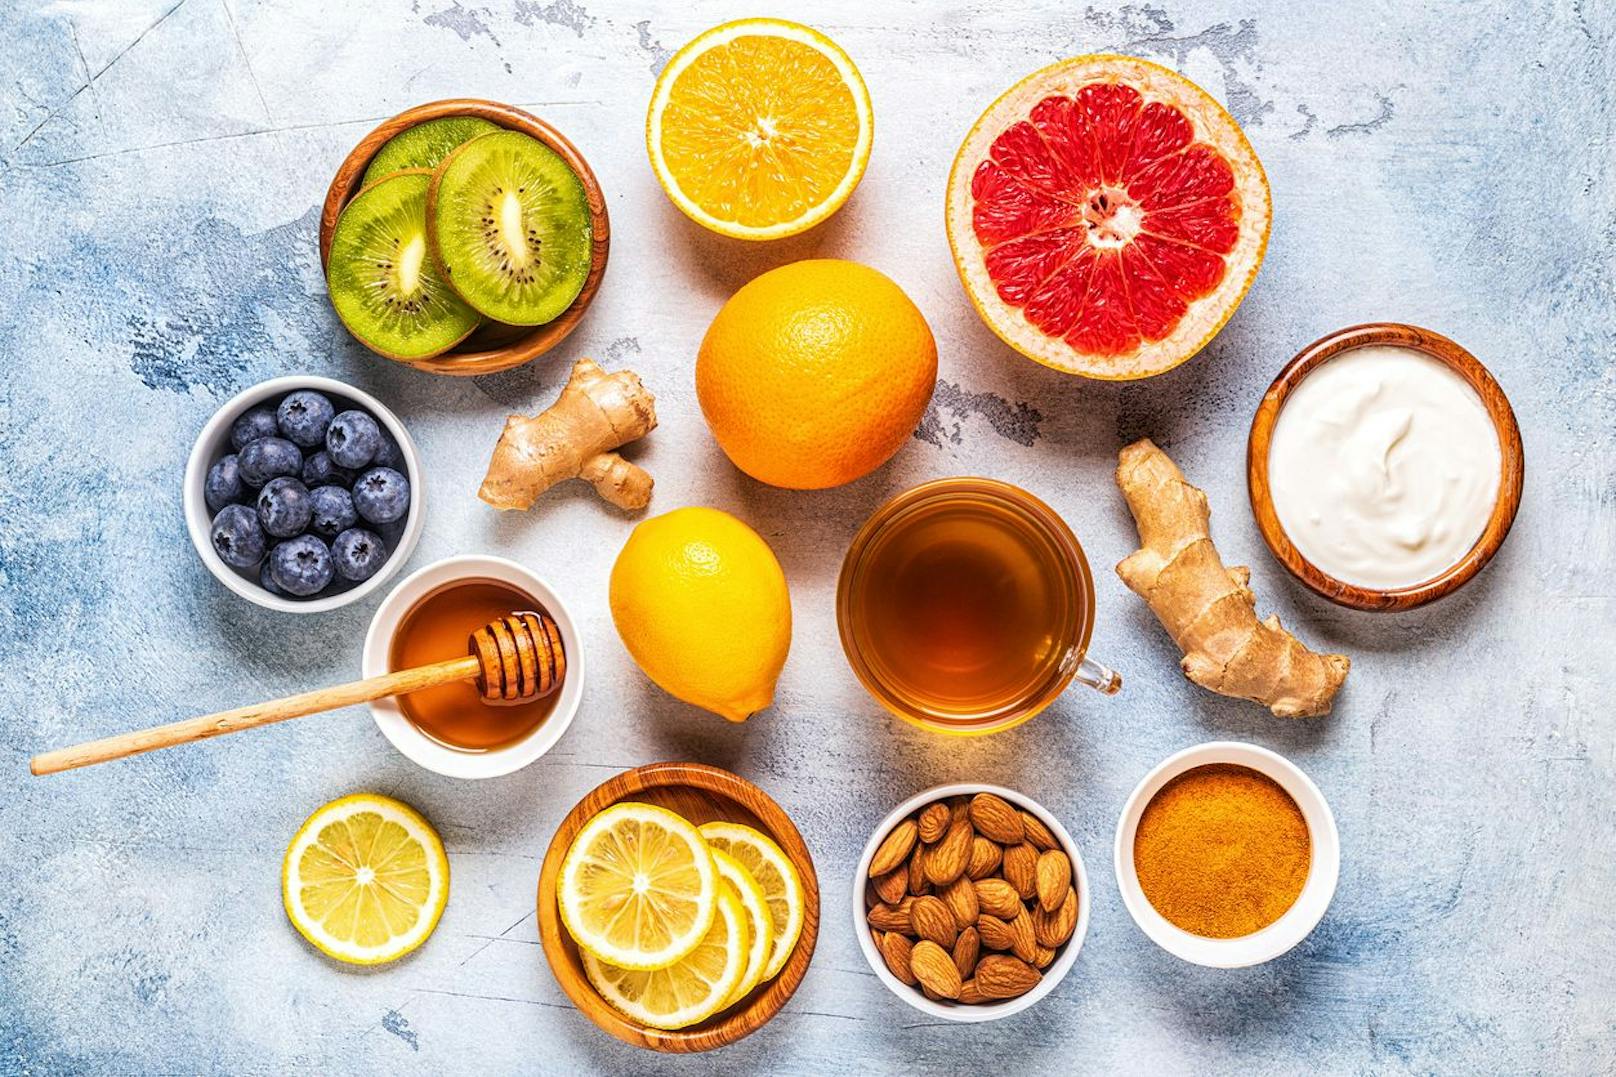 Früchte mit einer hohen Menge an Vitamin C eignen sich als erfrischender Snack und sind auch noch mit ausreichend Hyaluronsäure geladen. Auf Kiwis, Erdbeeren und Mandarinen ist besonders viel Verlass. 